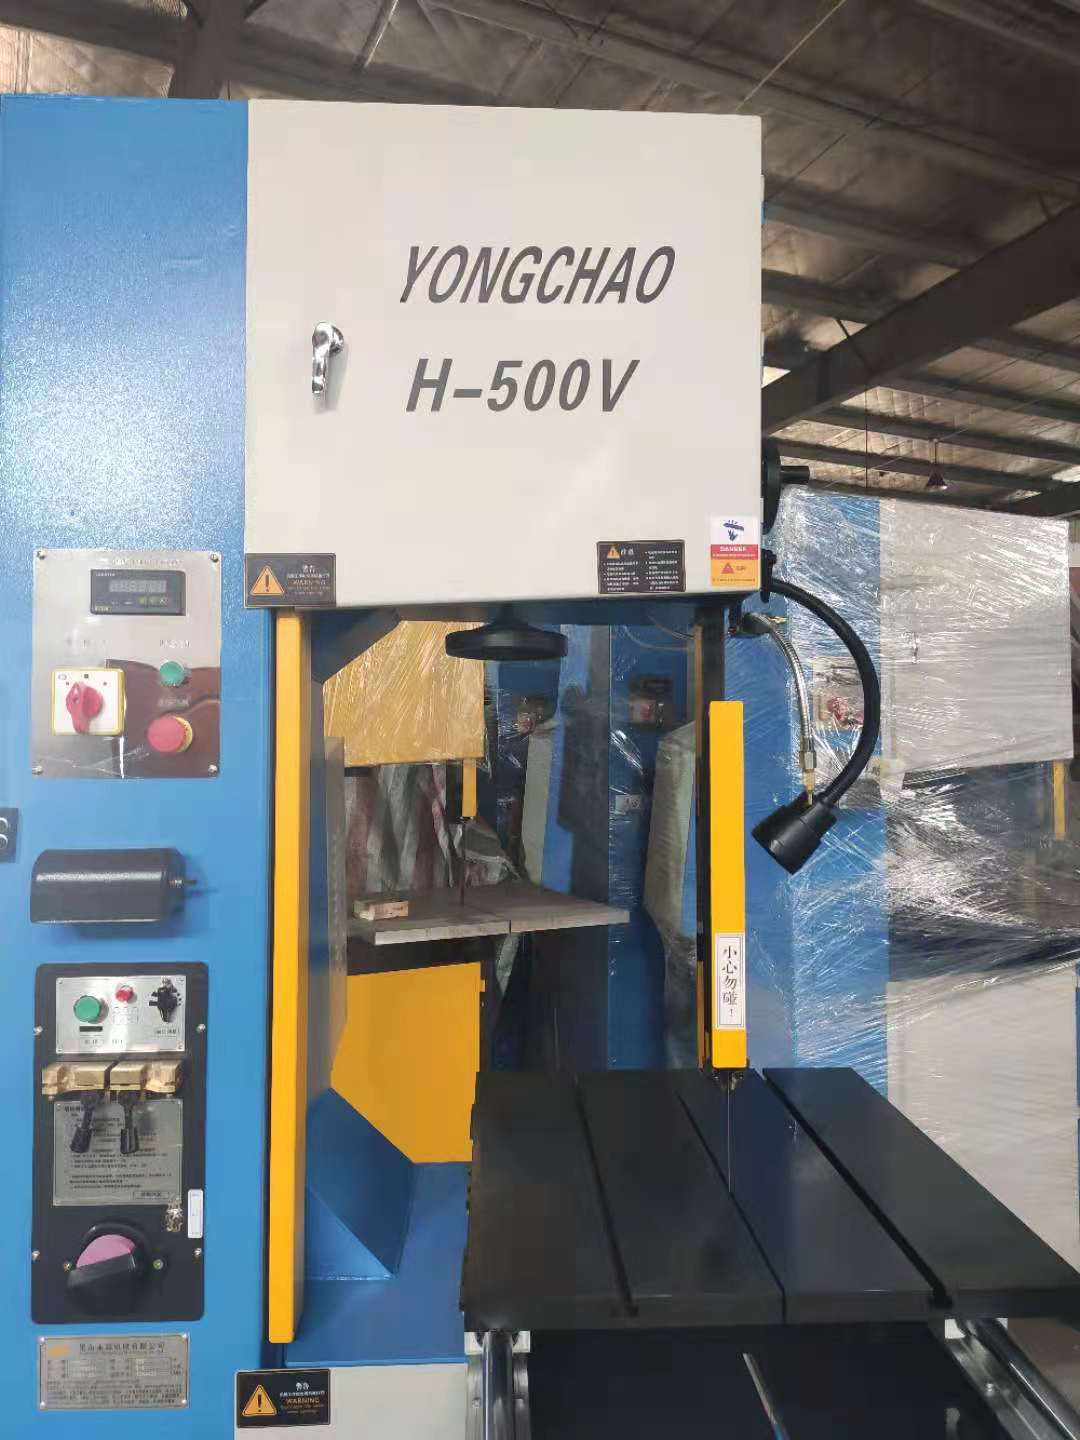 立式带锯床 yongchao H-500V 铝合金轮毂锯切机3